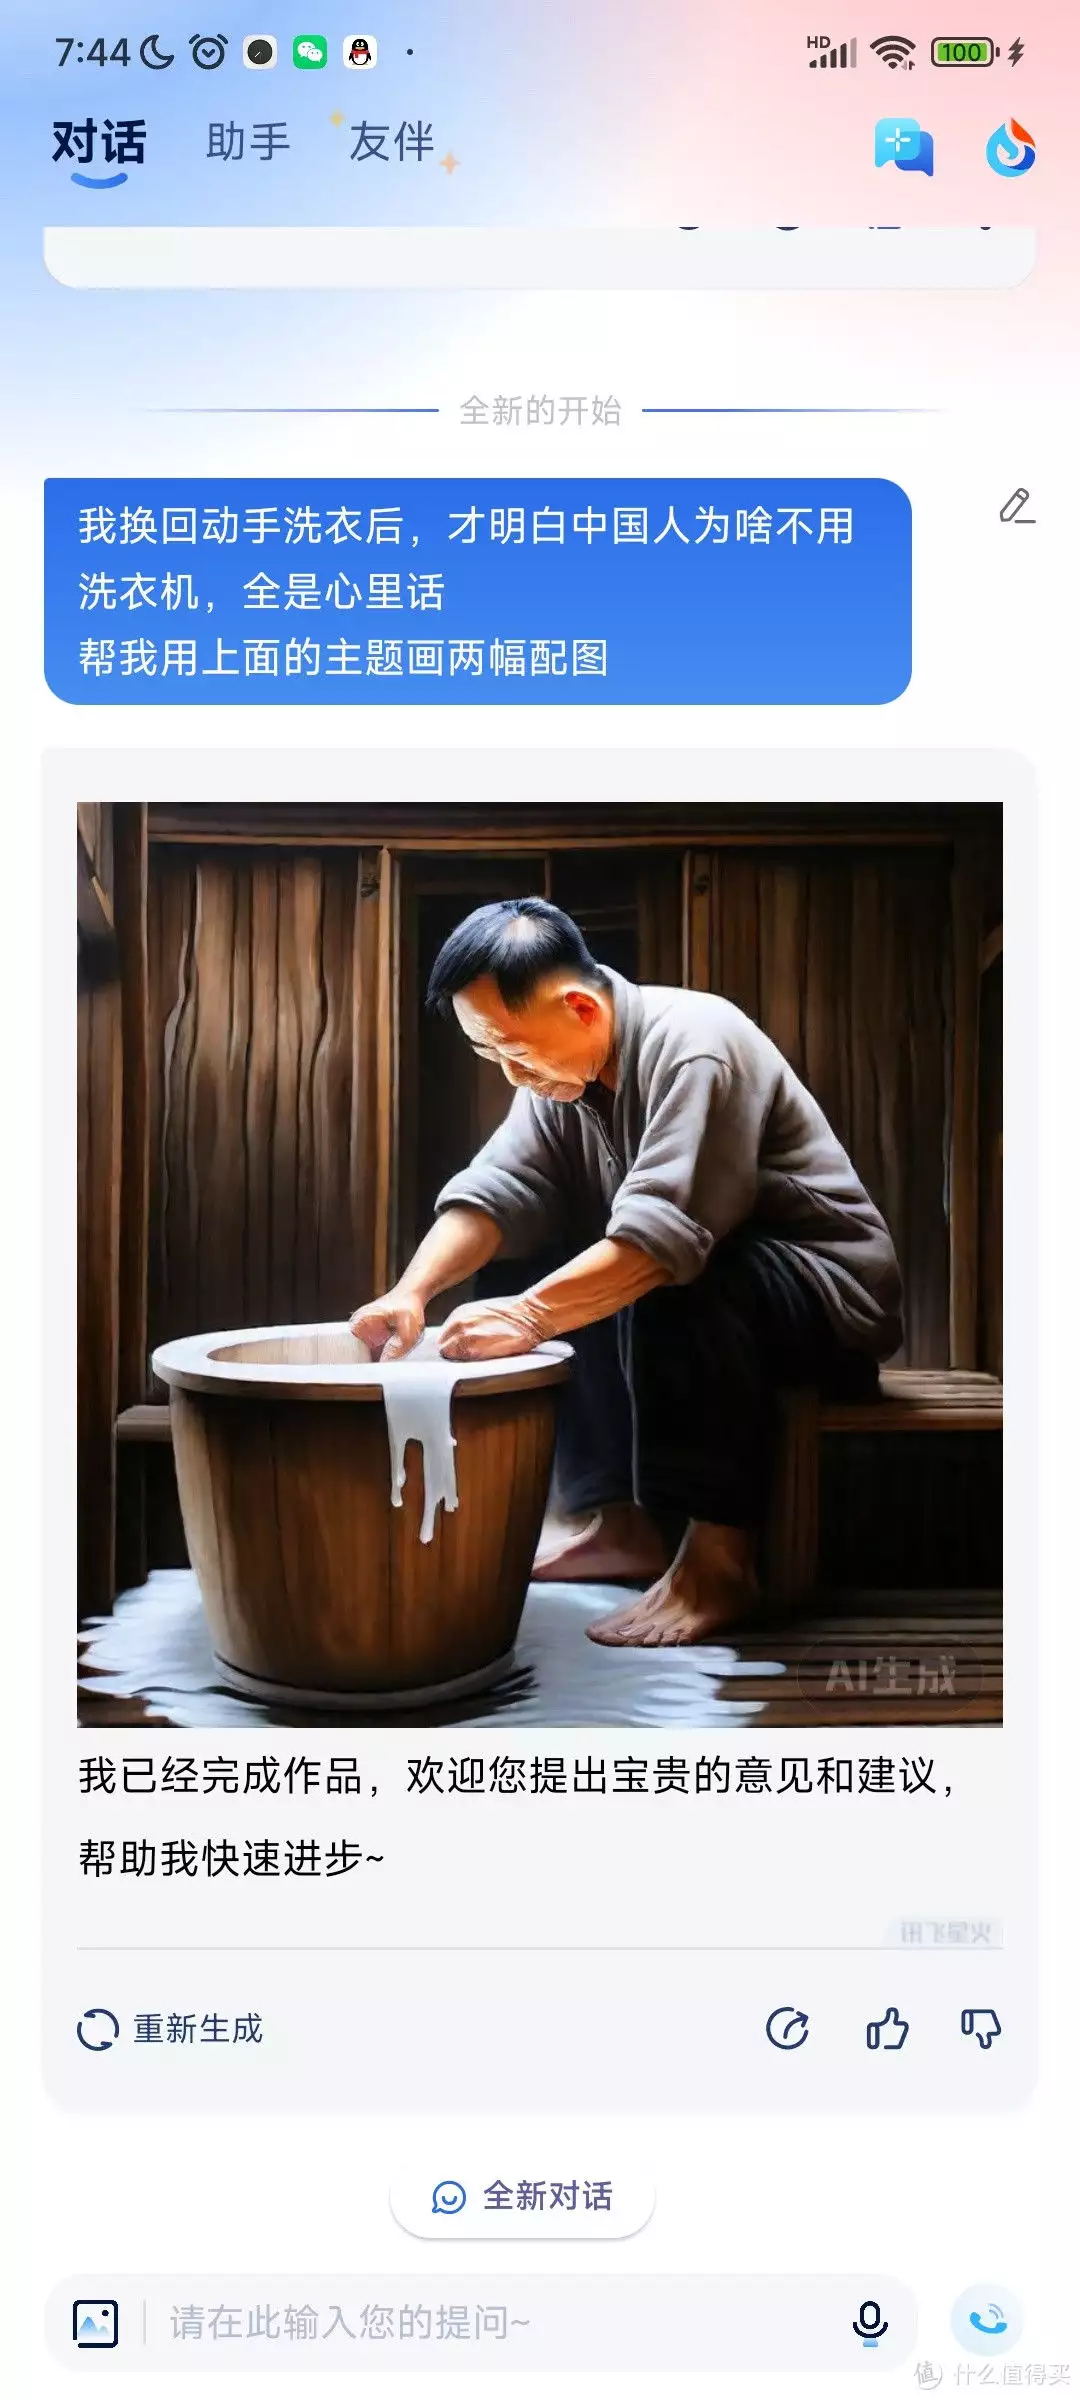 回归手洗的领悟：中国人洗衣哲学的深层理解《第二十条》：谁注意到赵丽颖脸上的性暗示，看懂了后背发凉